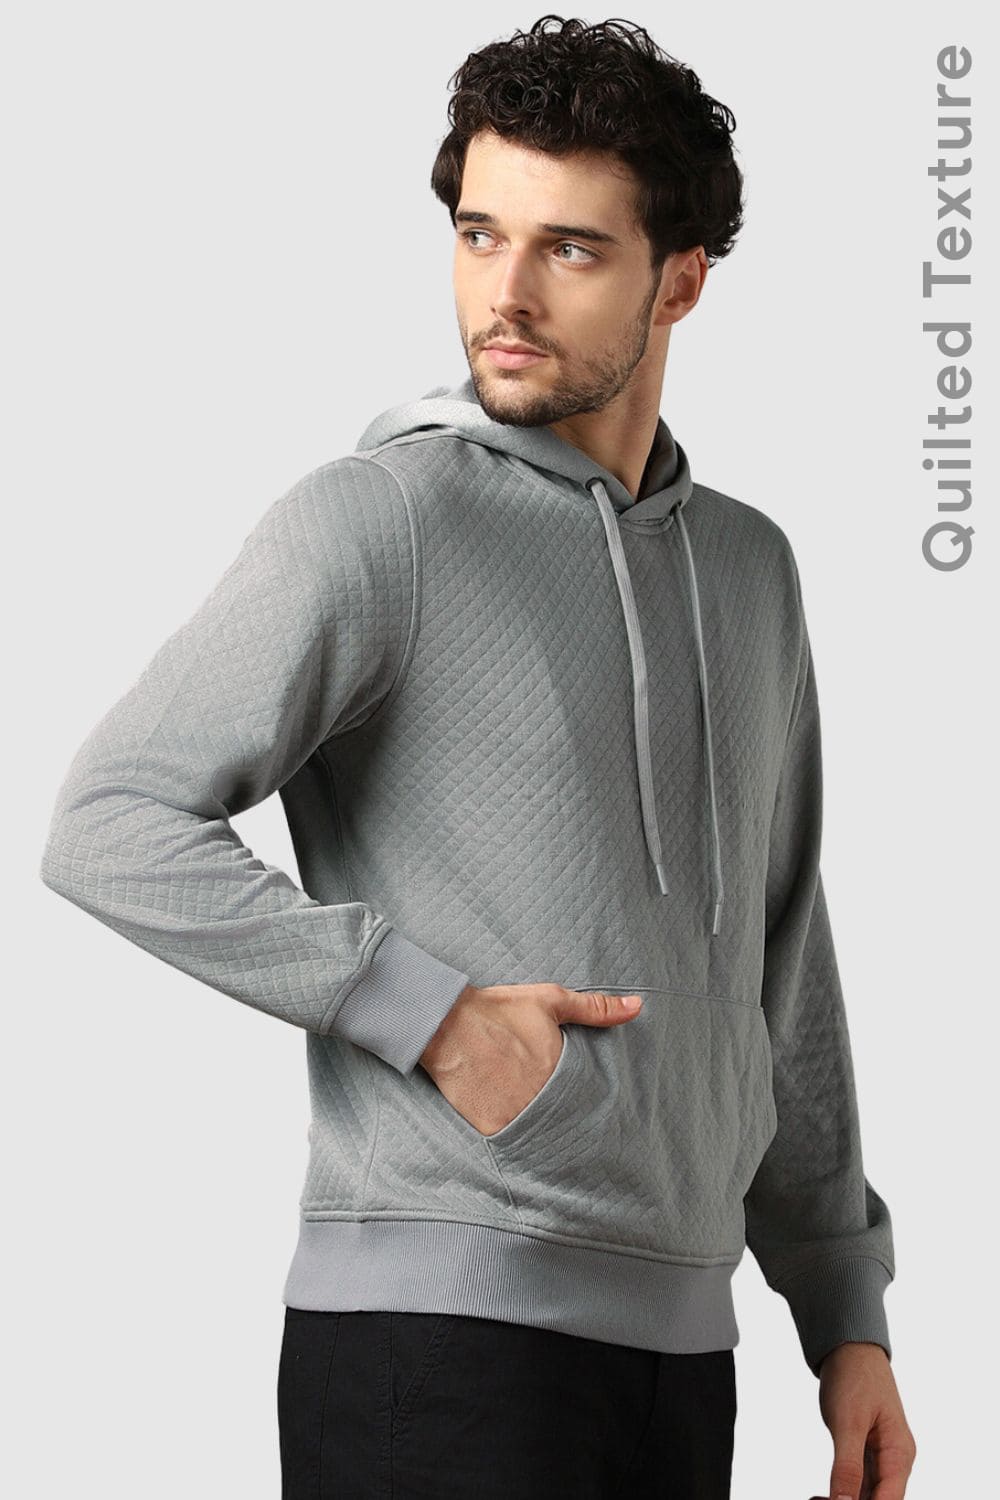 Buy Aqua Grey Sweatshirt & Hoodies for Men by Nobero Online